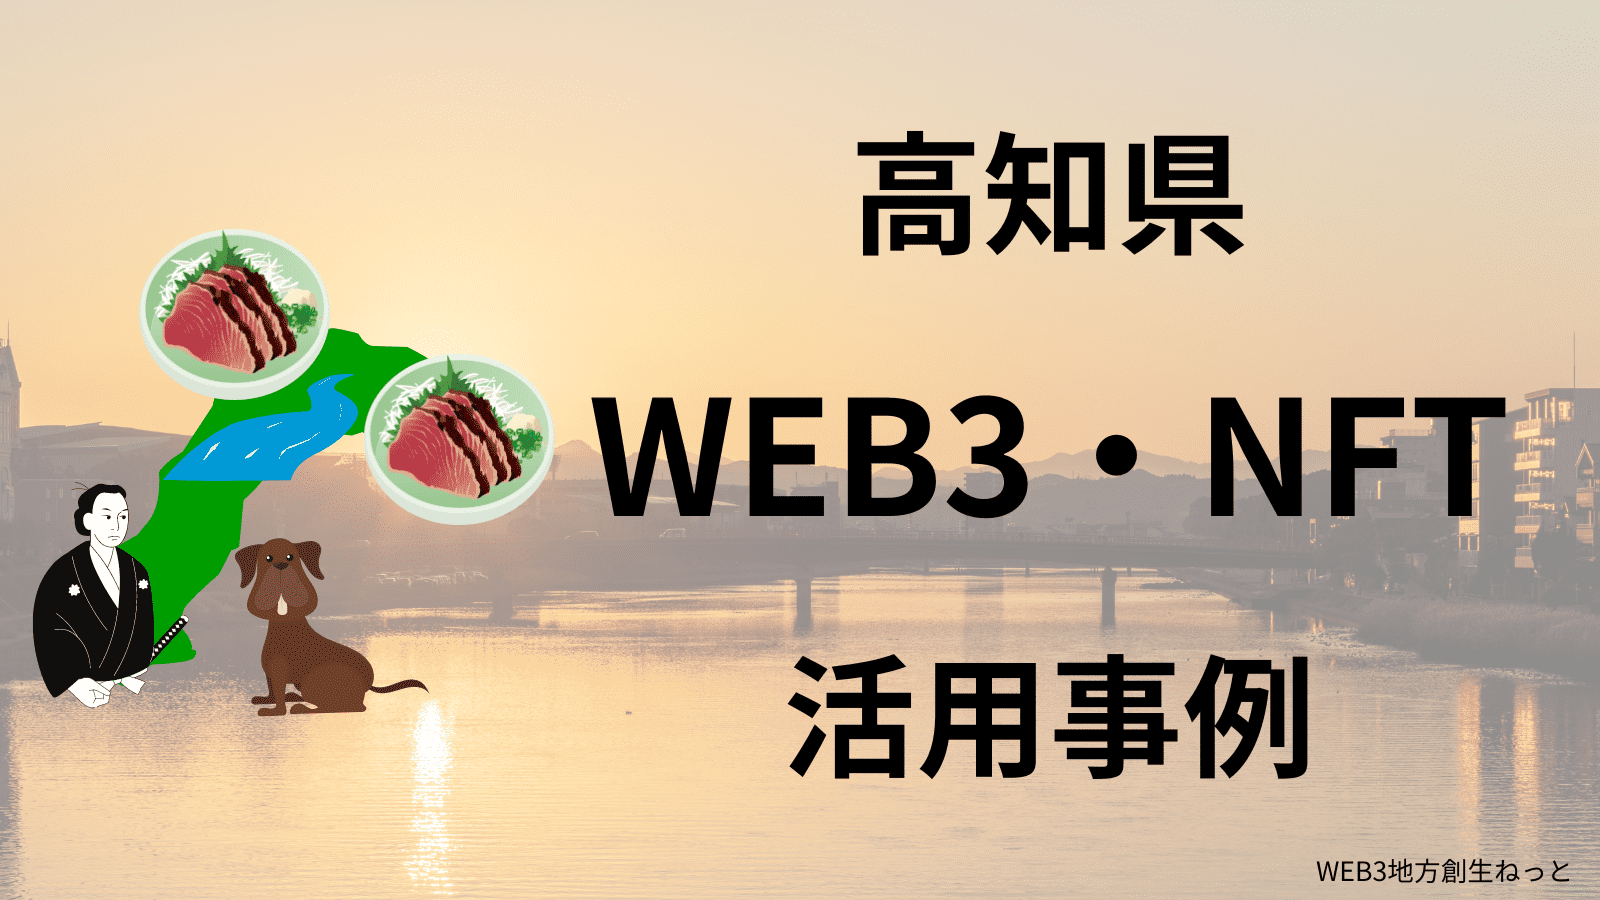 高知県 Web3 地方創生